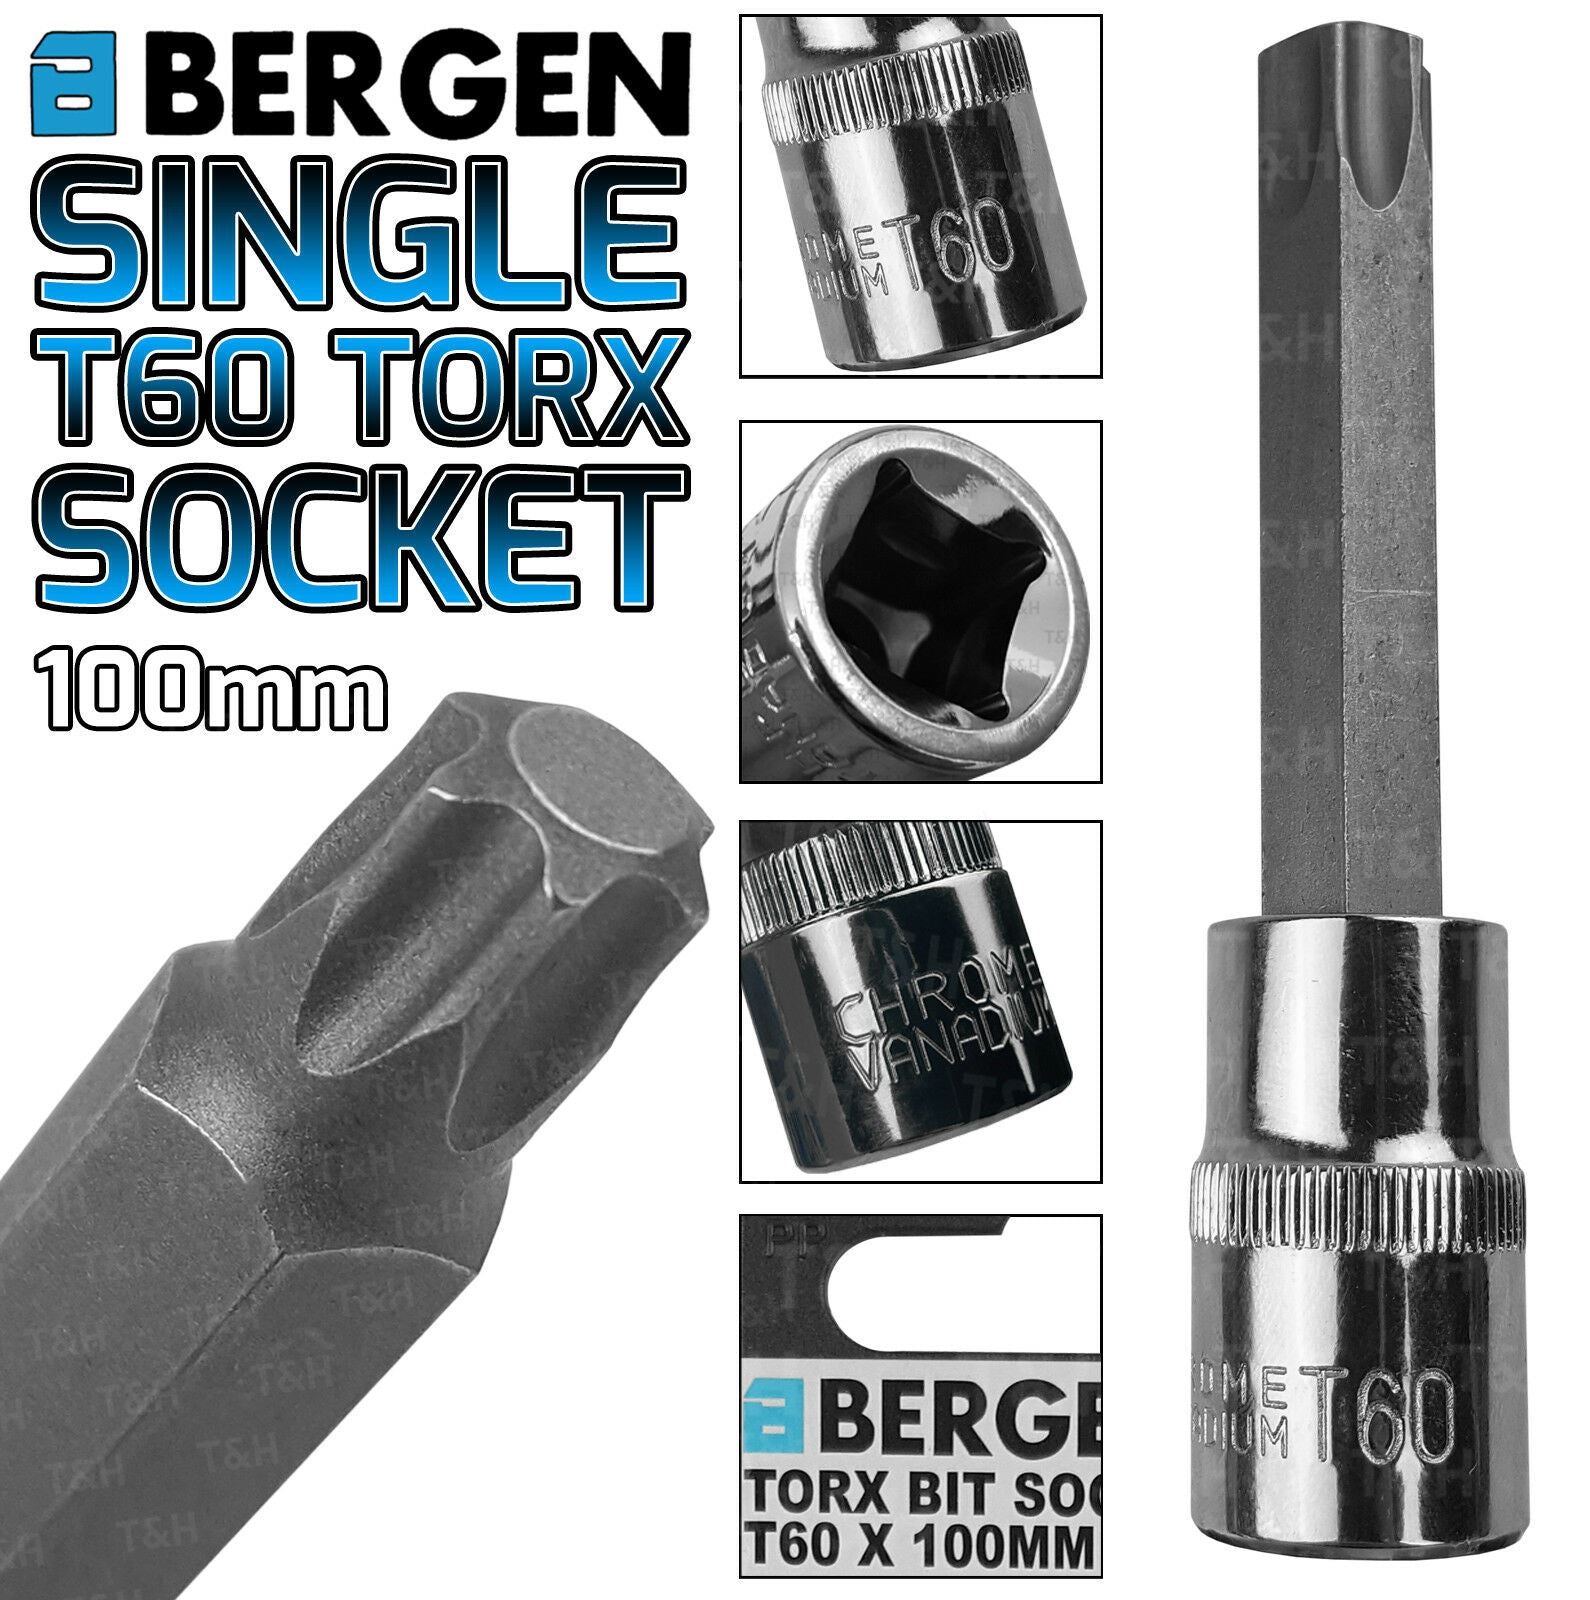 BERGEN T60 1/2" DRIVE 100MM LONG TORX BIT SOCKET ( SINGLE )